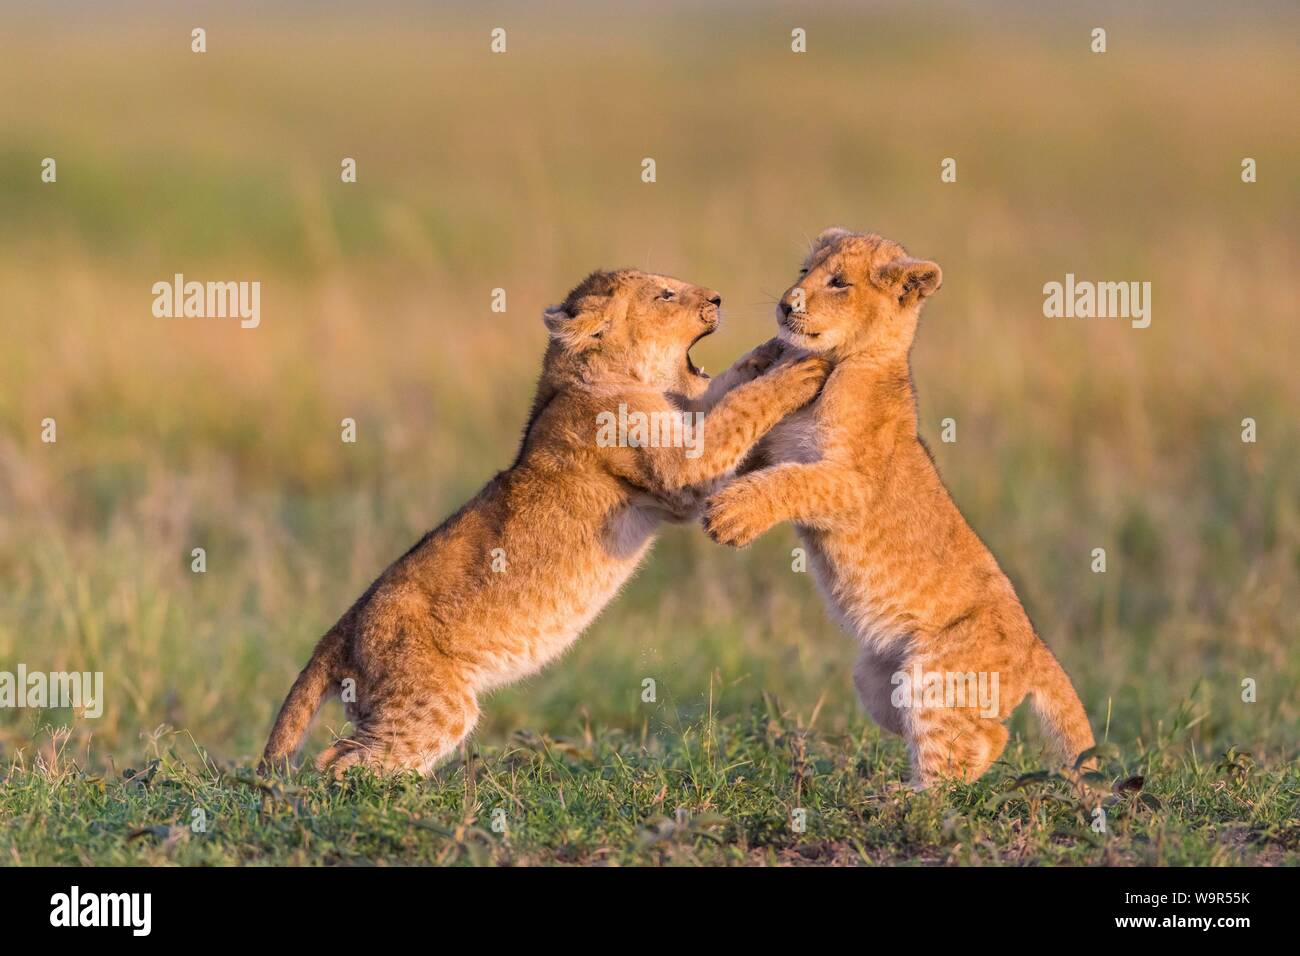 Deux oursons lion (Panthera leo) jouant dans l'herbe, Masai Mara National Reserve, Kenya Banque D'Images